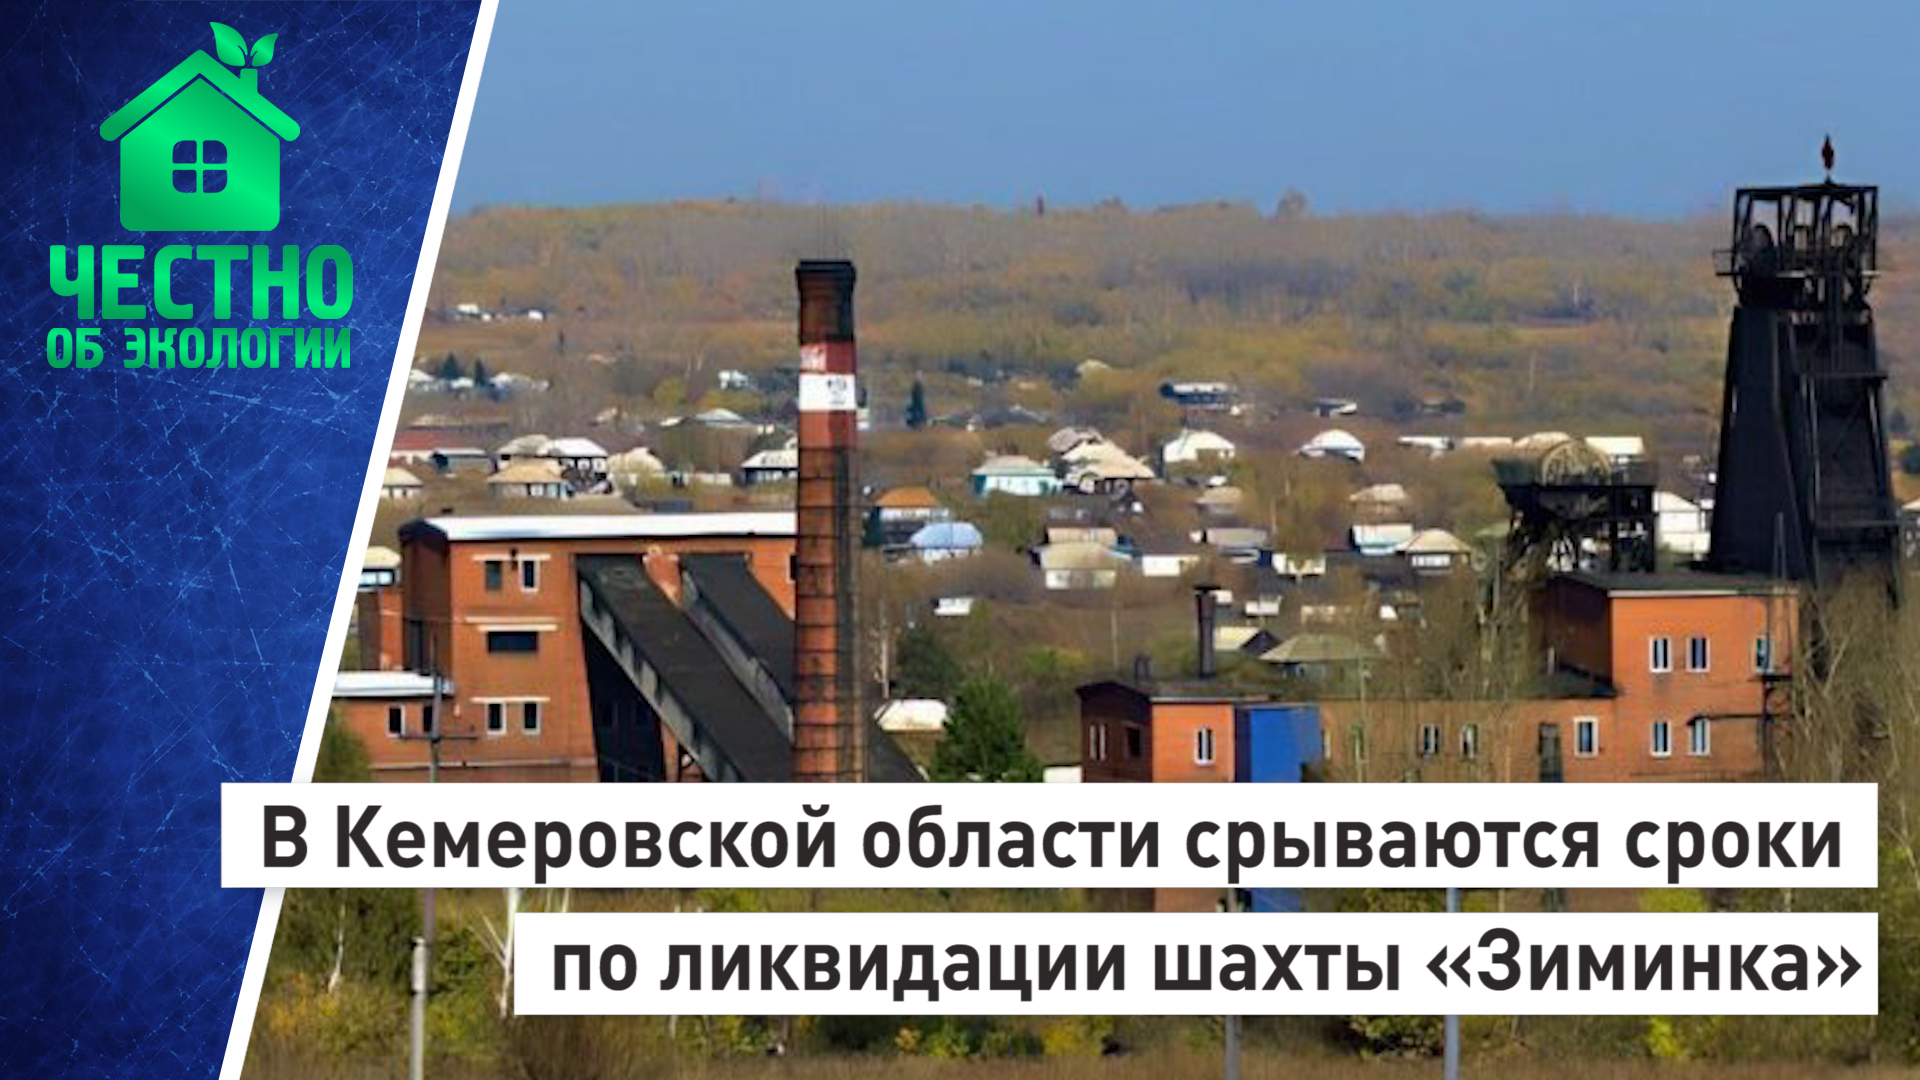 В Кемеровской области срываются сроки по ликвидации шахты «Зиминка»